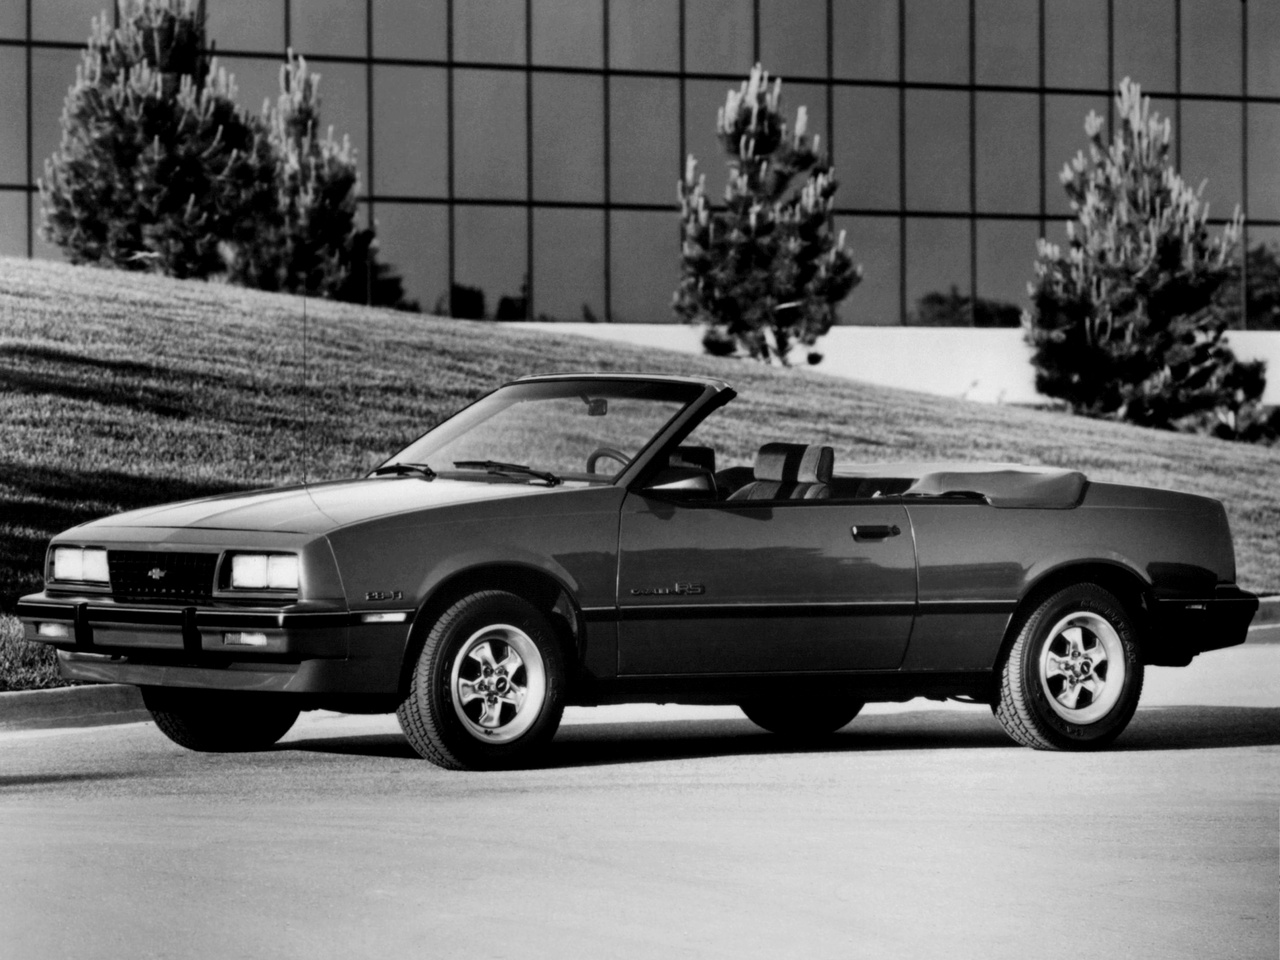 Chevrolet cavalier 1987 photo - 4